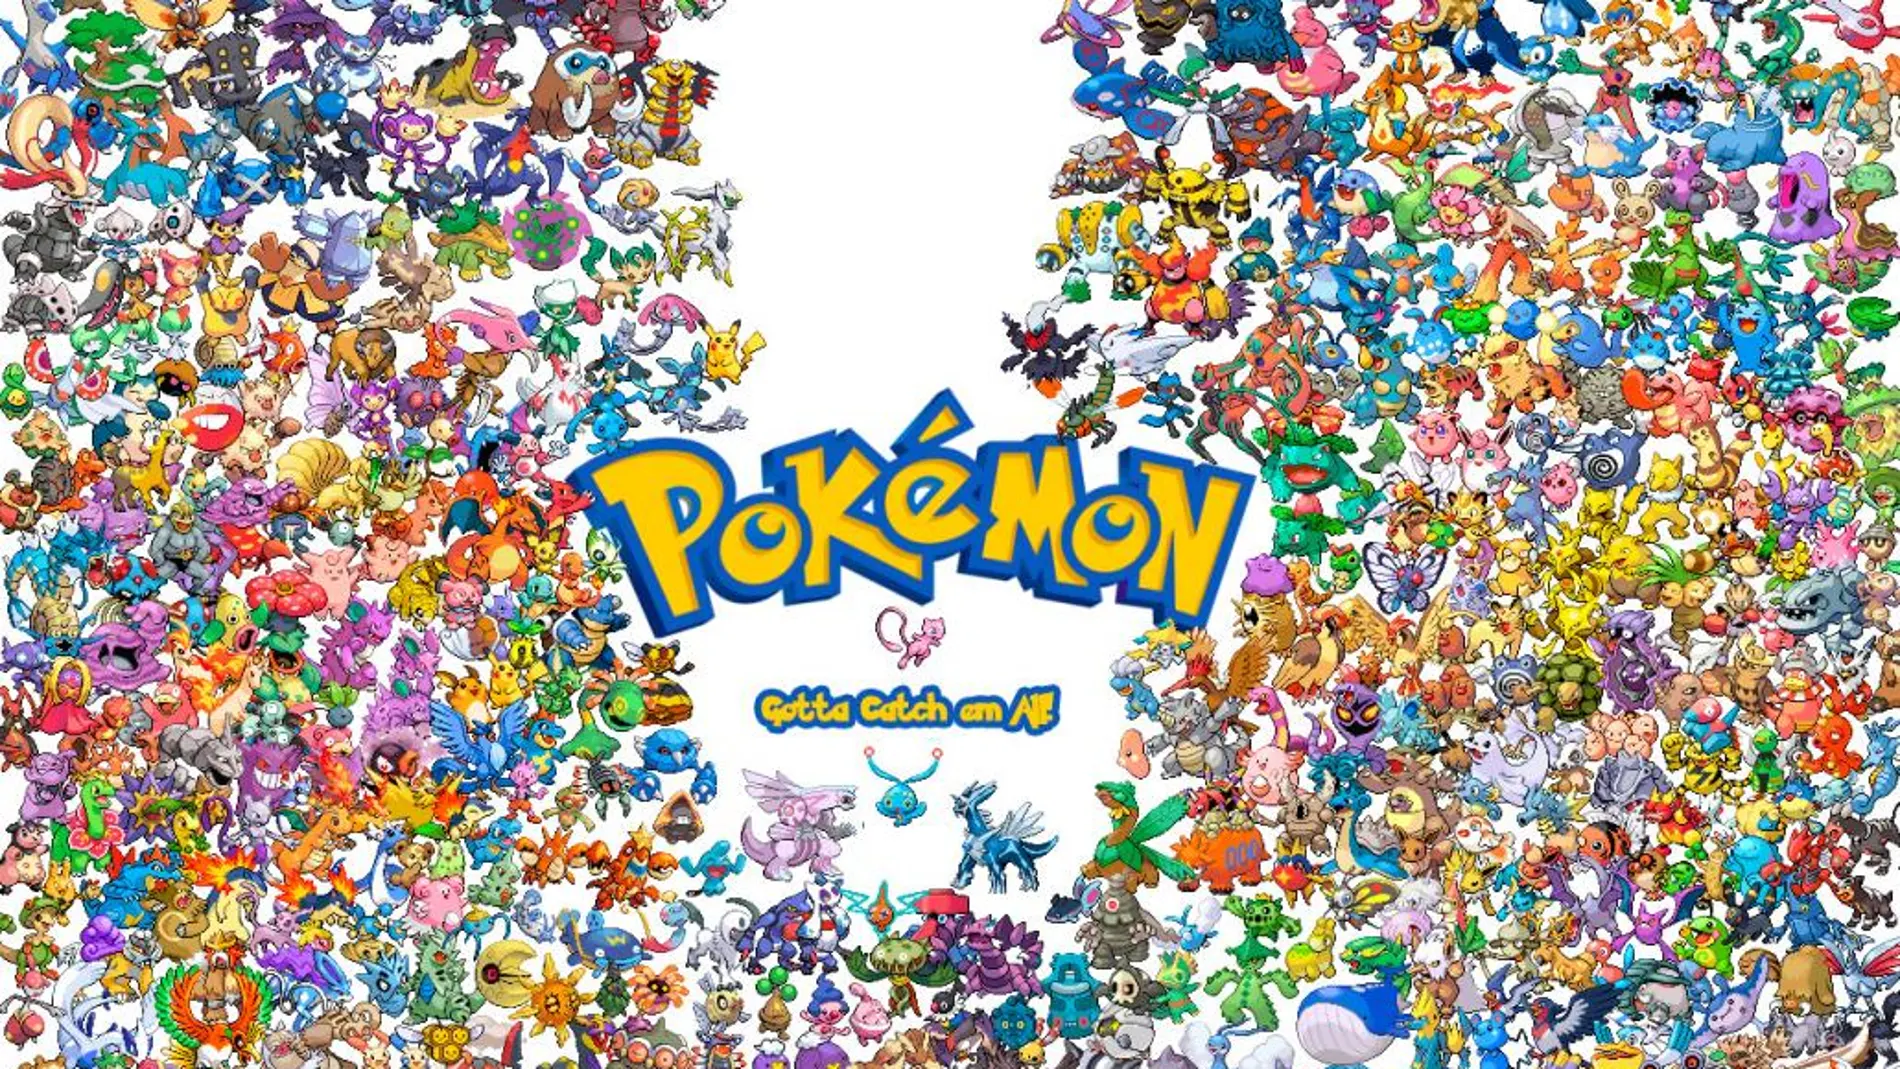 Pokémon continúa con las celebraciones de su 20º aniversario en la Super Bowl